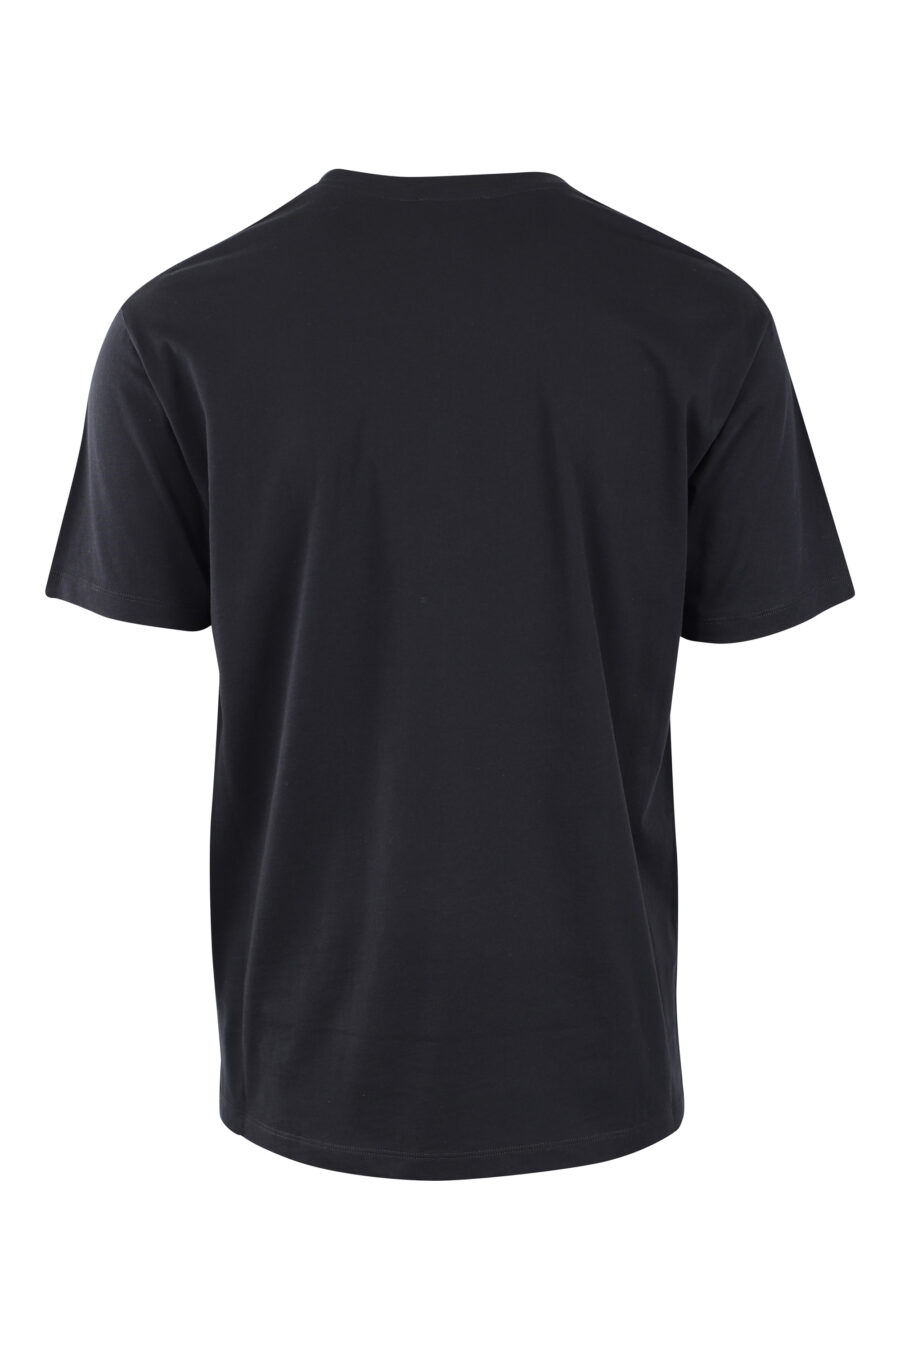 T-shirt preta com maxilogue branco "paris" - IMG 2580